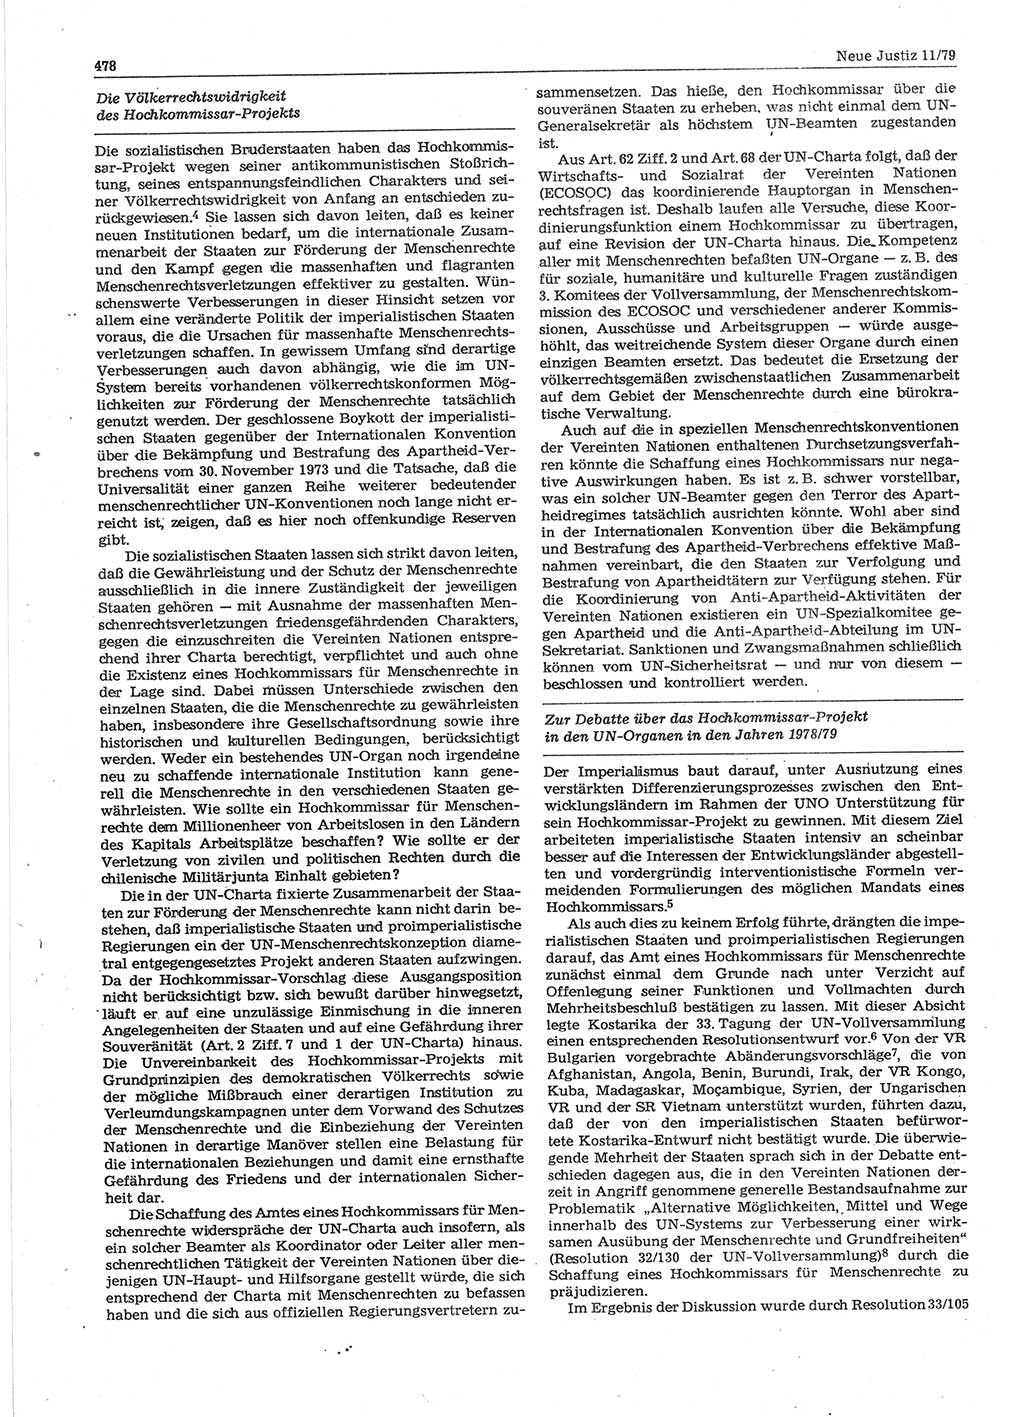 Neue Justiz (NJ), Zeitschrift für sozialistisches Recht und Gesetzlichkeit [Deutsche Demokratische Republik (DDR)], 33. Jahrgang 1979, Seite 478 (NJ DDR 1979, S. 478)